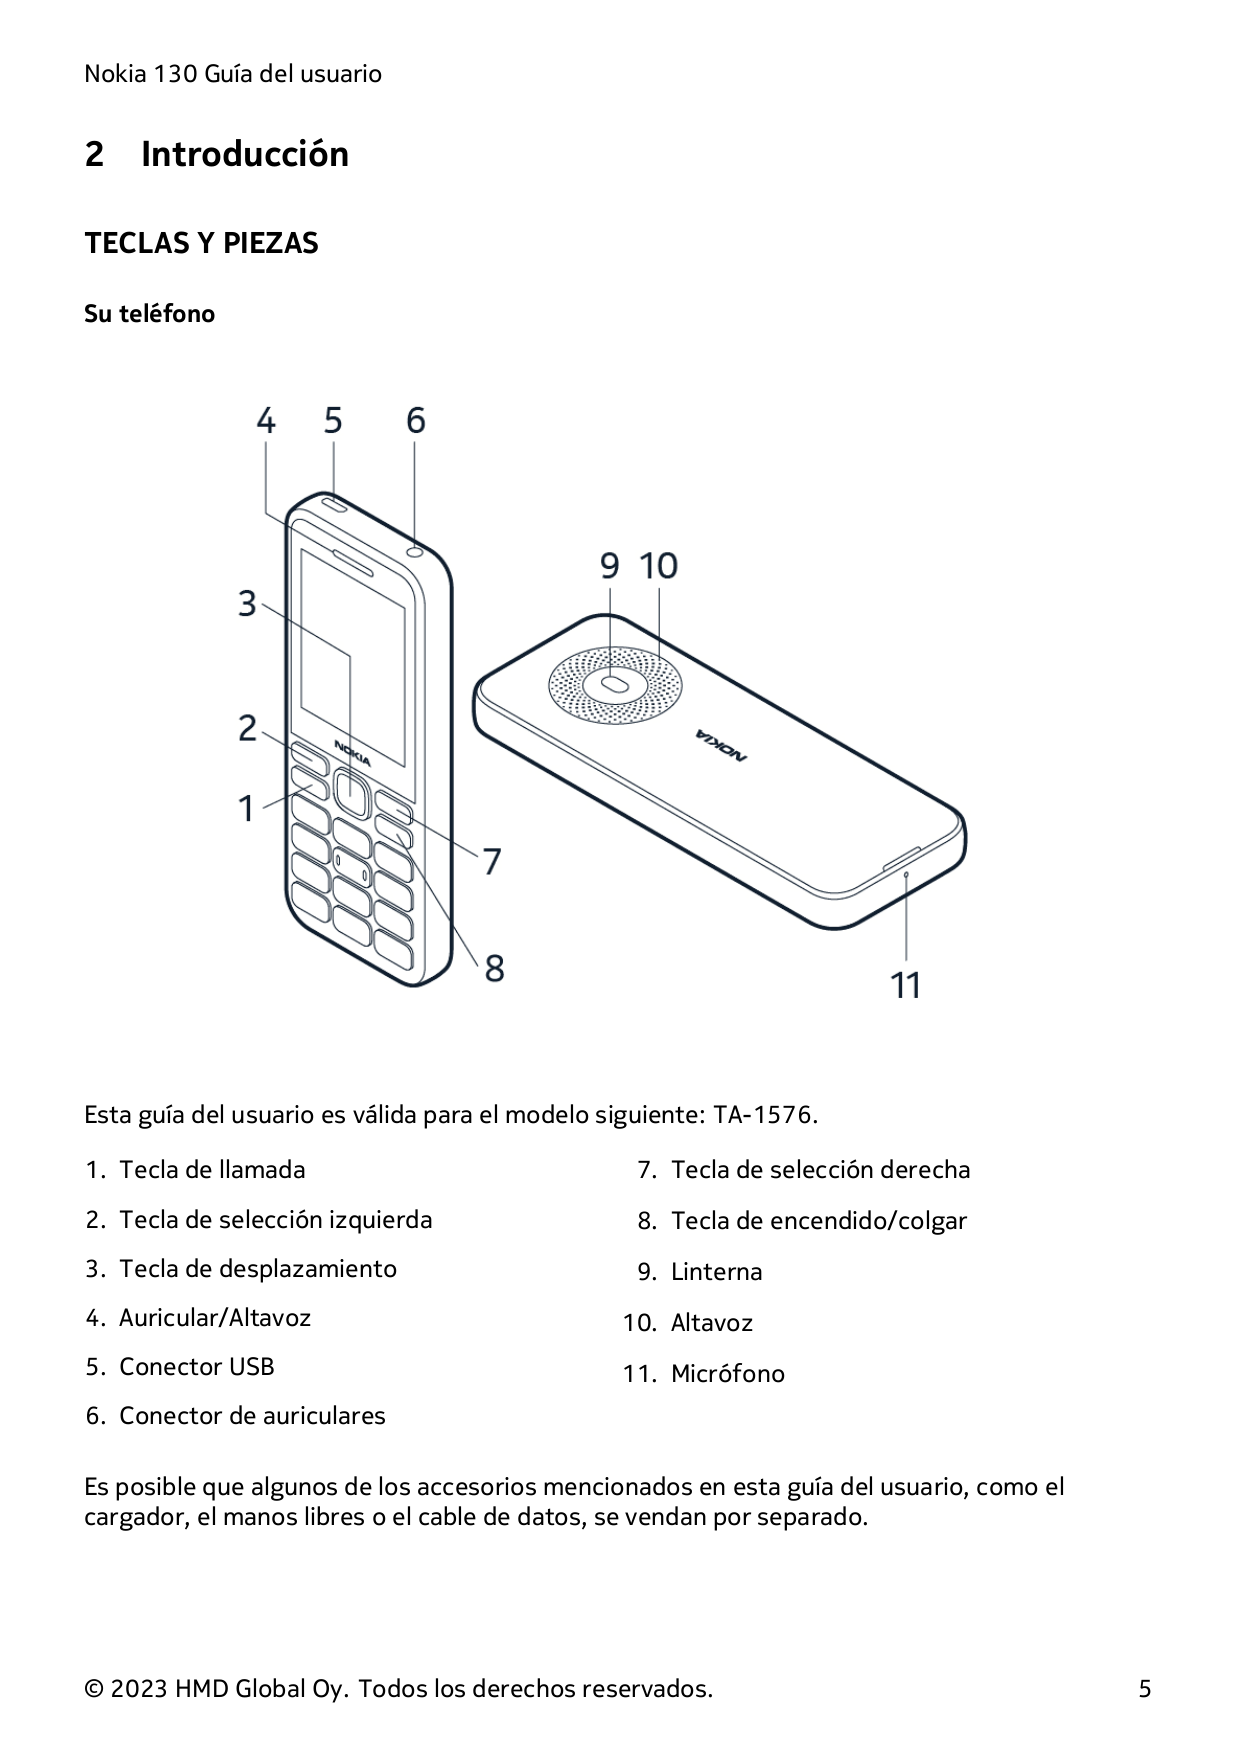 Nokia 130 Guía del usuario2IntroducciónTECLAS Y PIEZASSu teléfonoEsta guía del usuario es válida para el modelo siguiente: TA-15